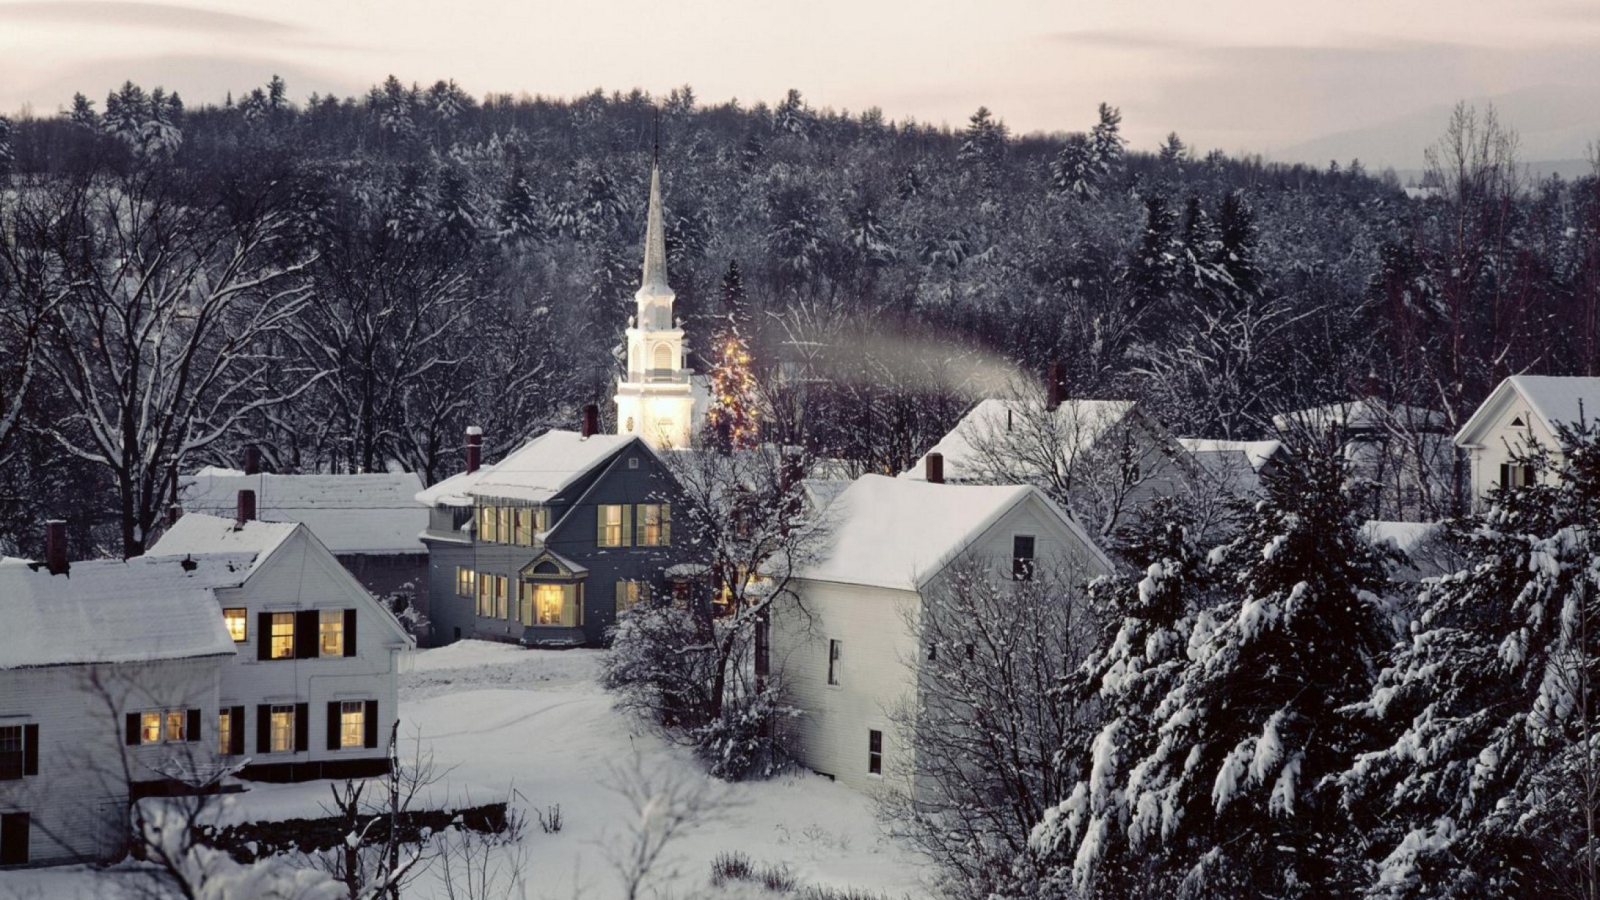 Обои Christmas in New England 1600x900